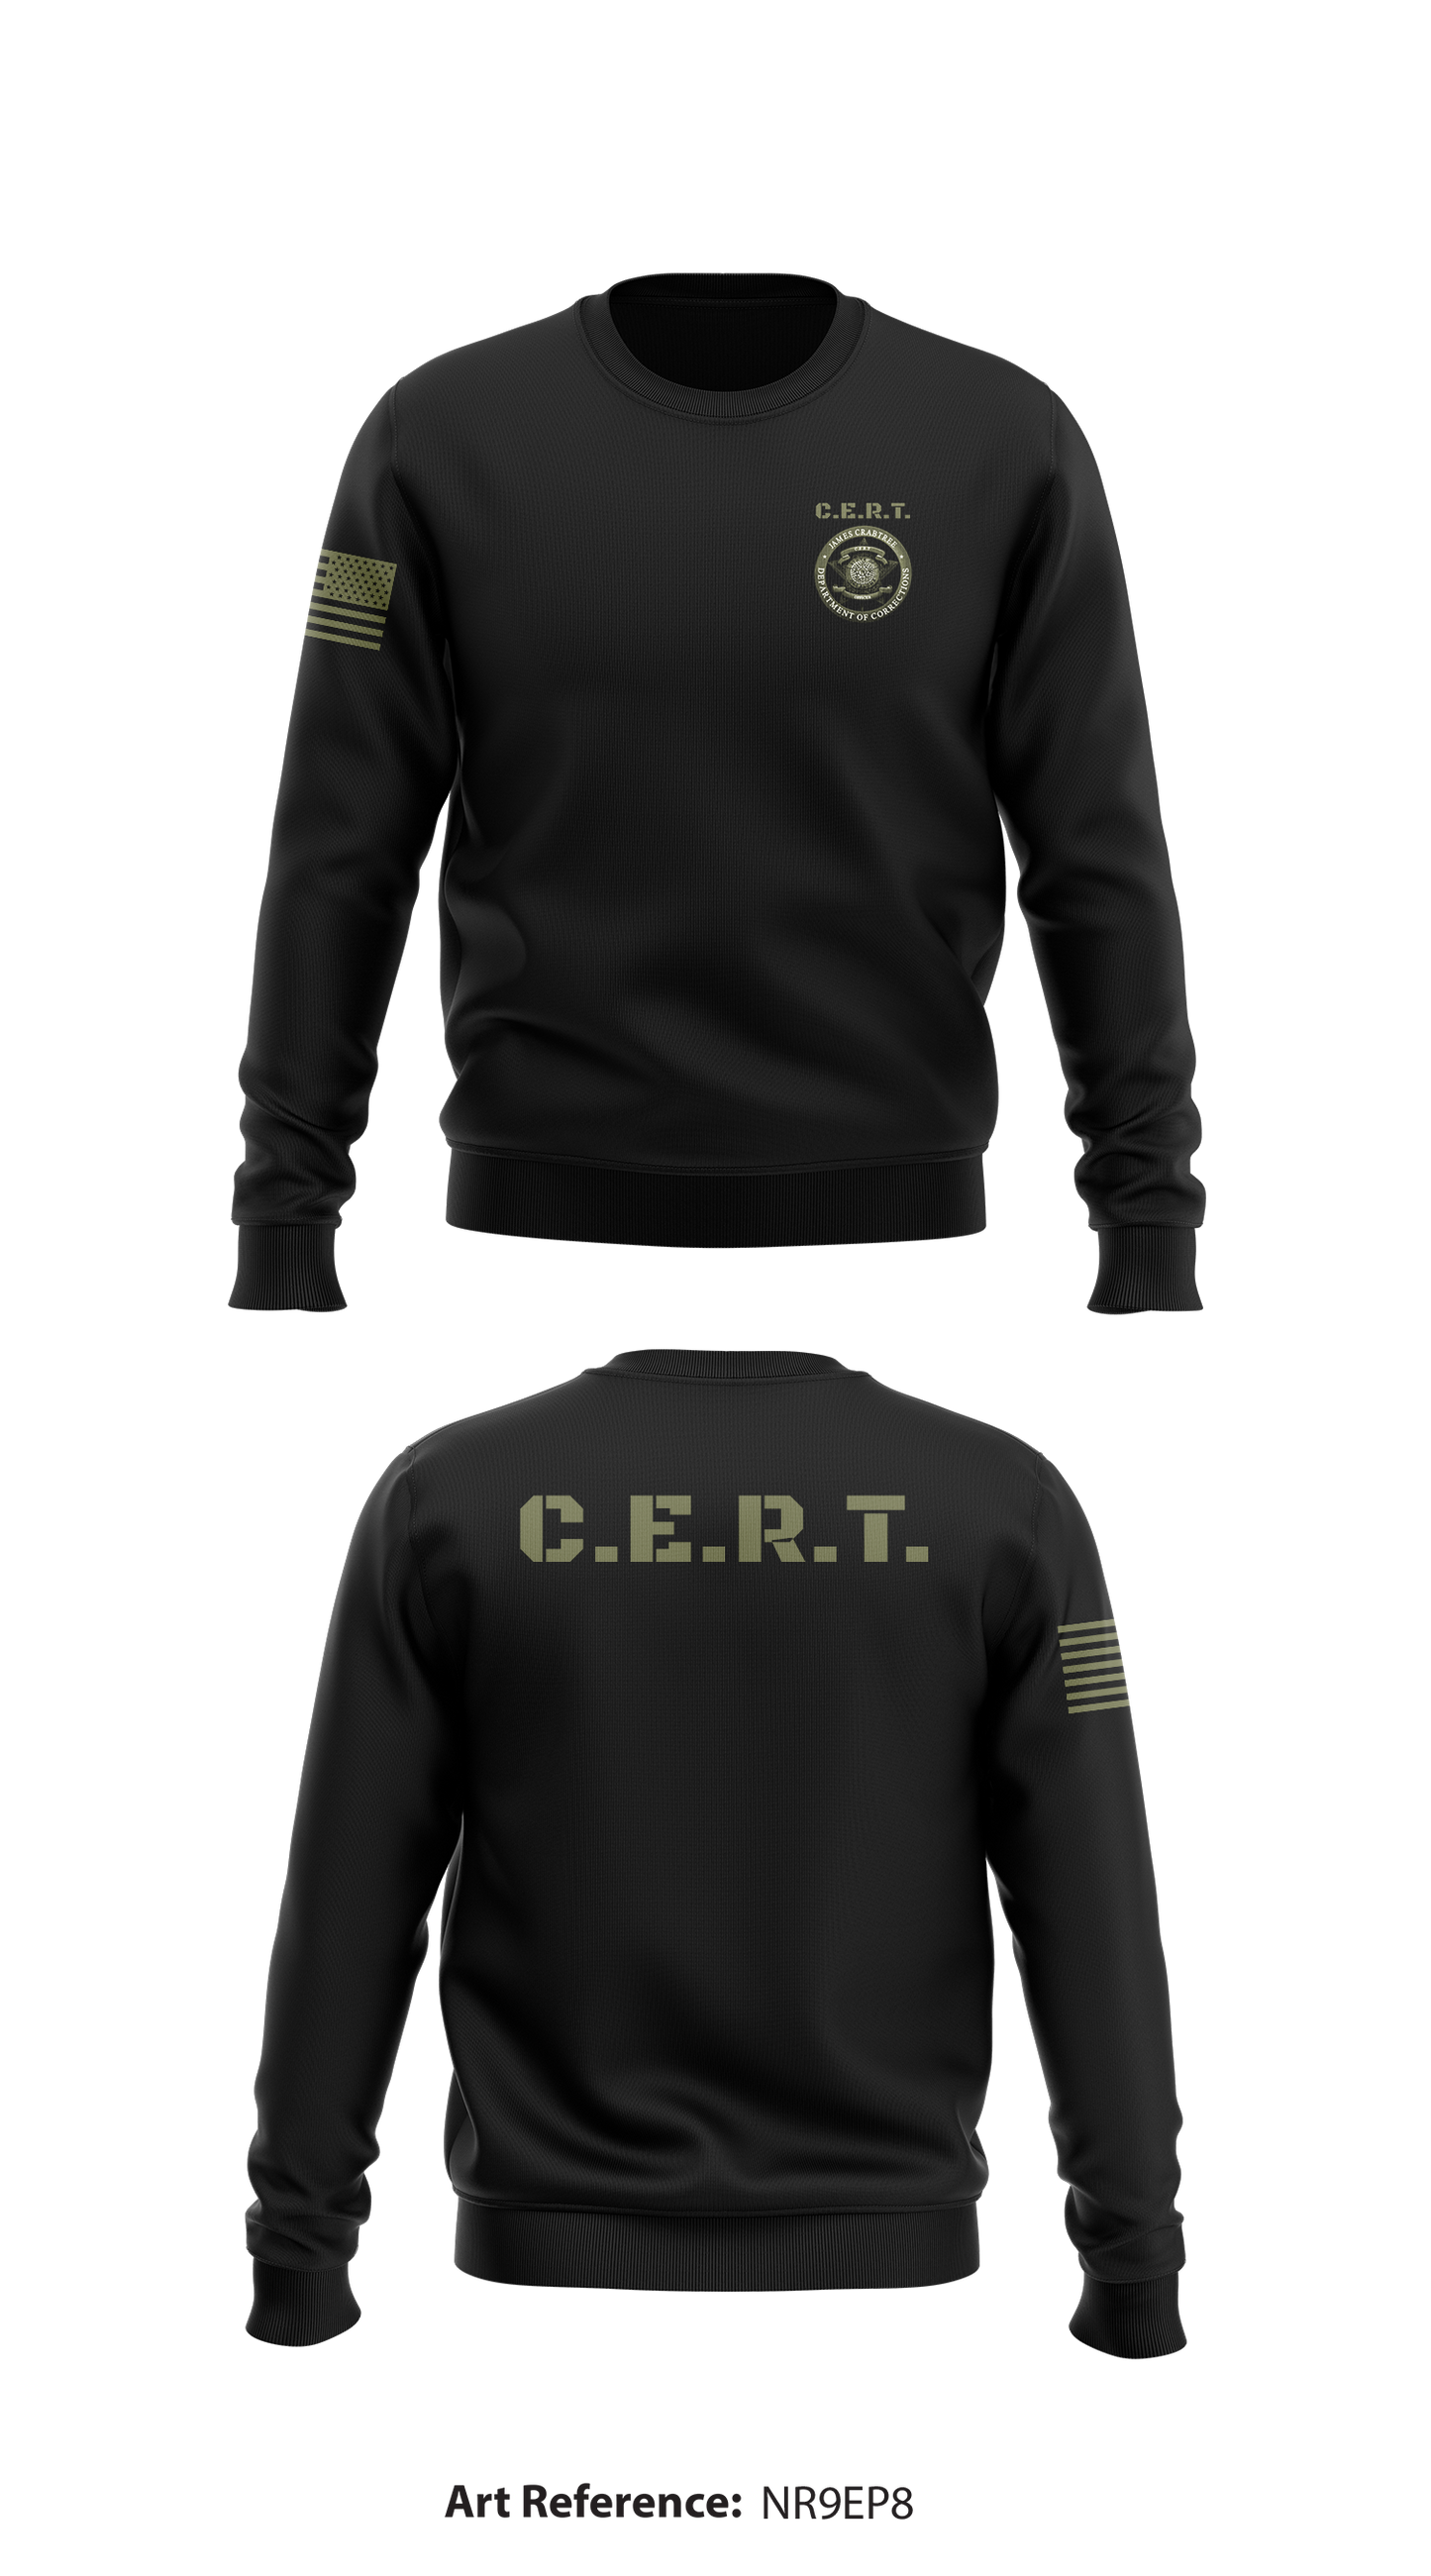 C.E.R.T. Store 1 Core Men's Crewneck Performance Sweatshirt - Nr9EP8